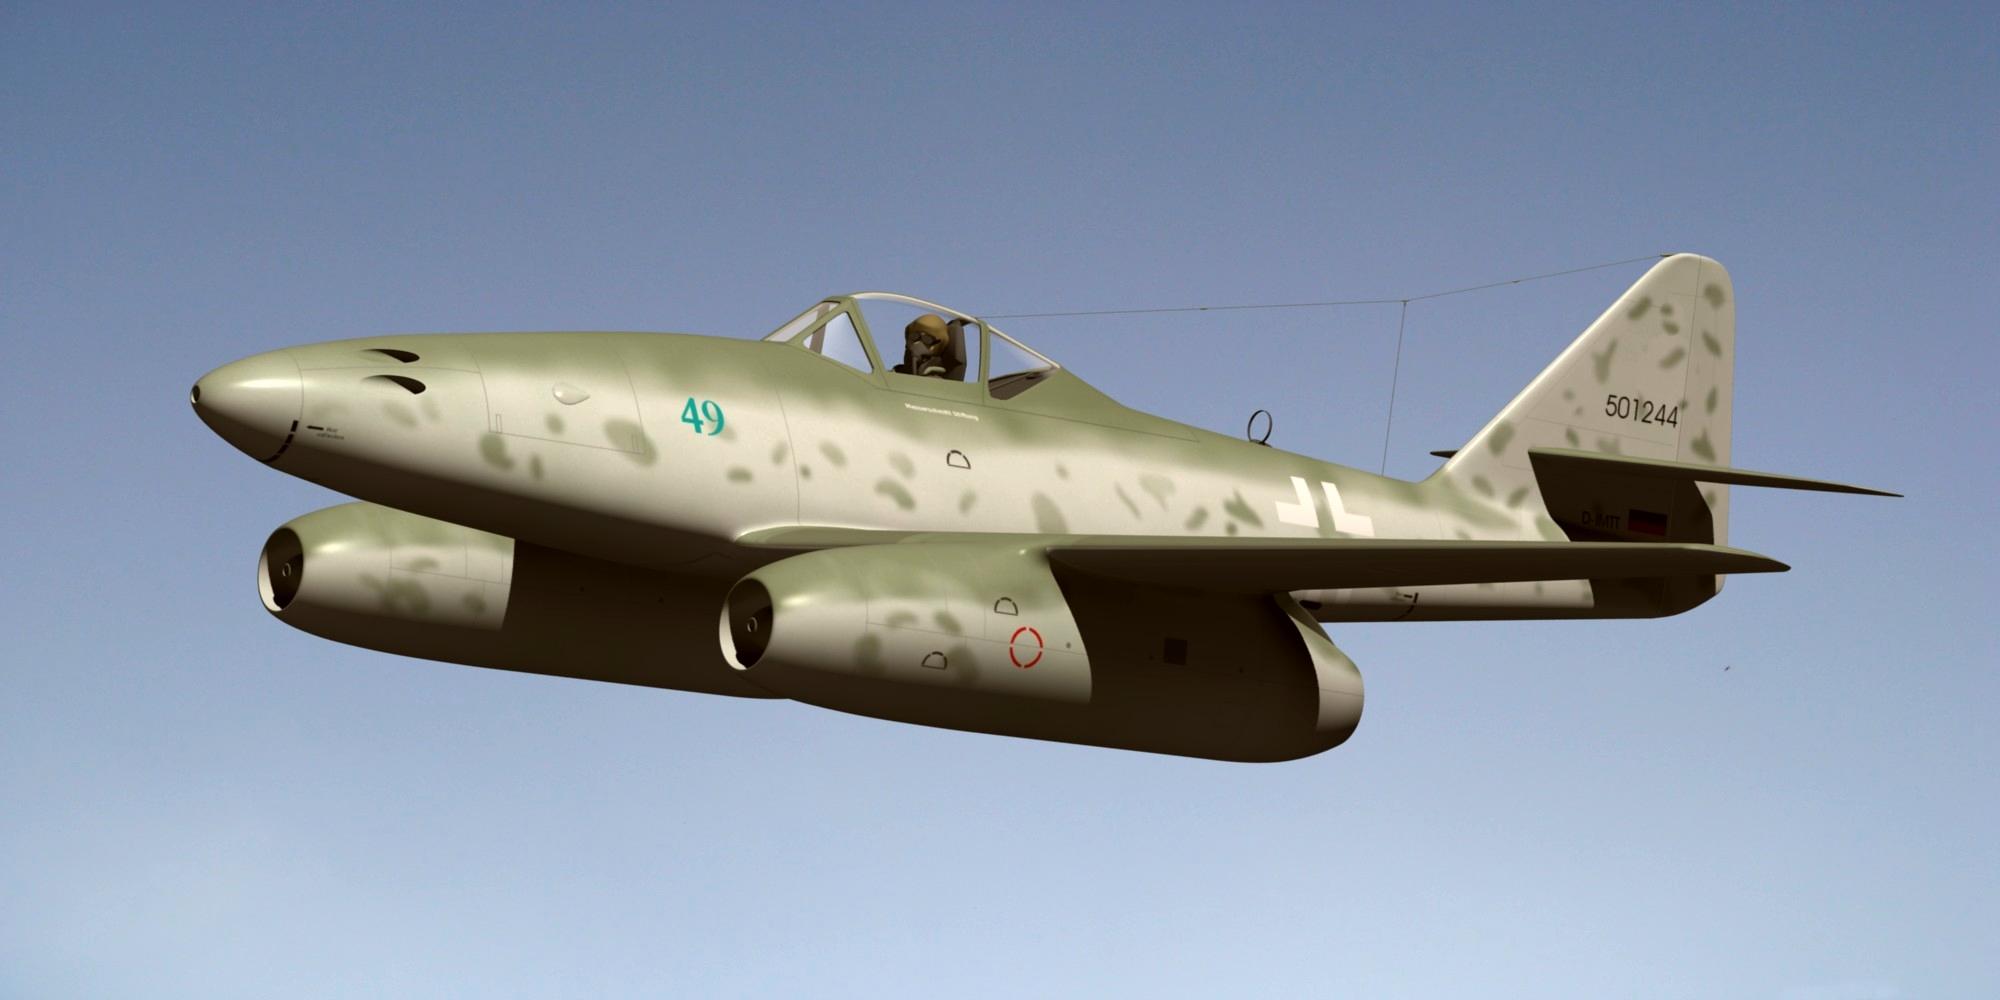 Messerschmitt Me 262 Wallpapers - Top Free Messerschmitt Me 262 ...